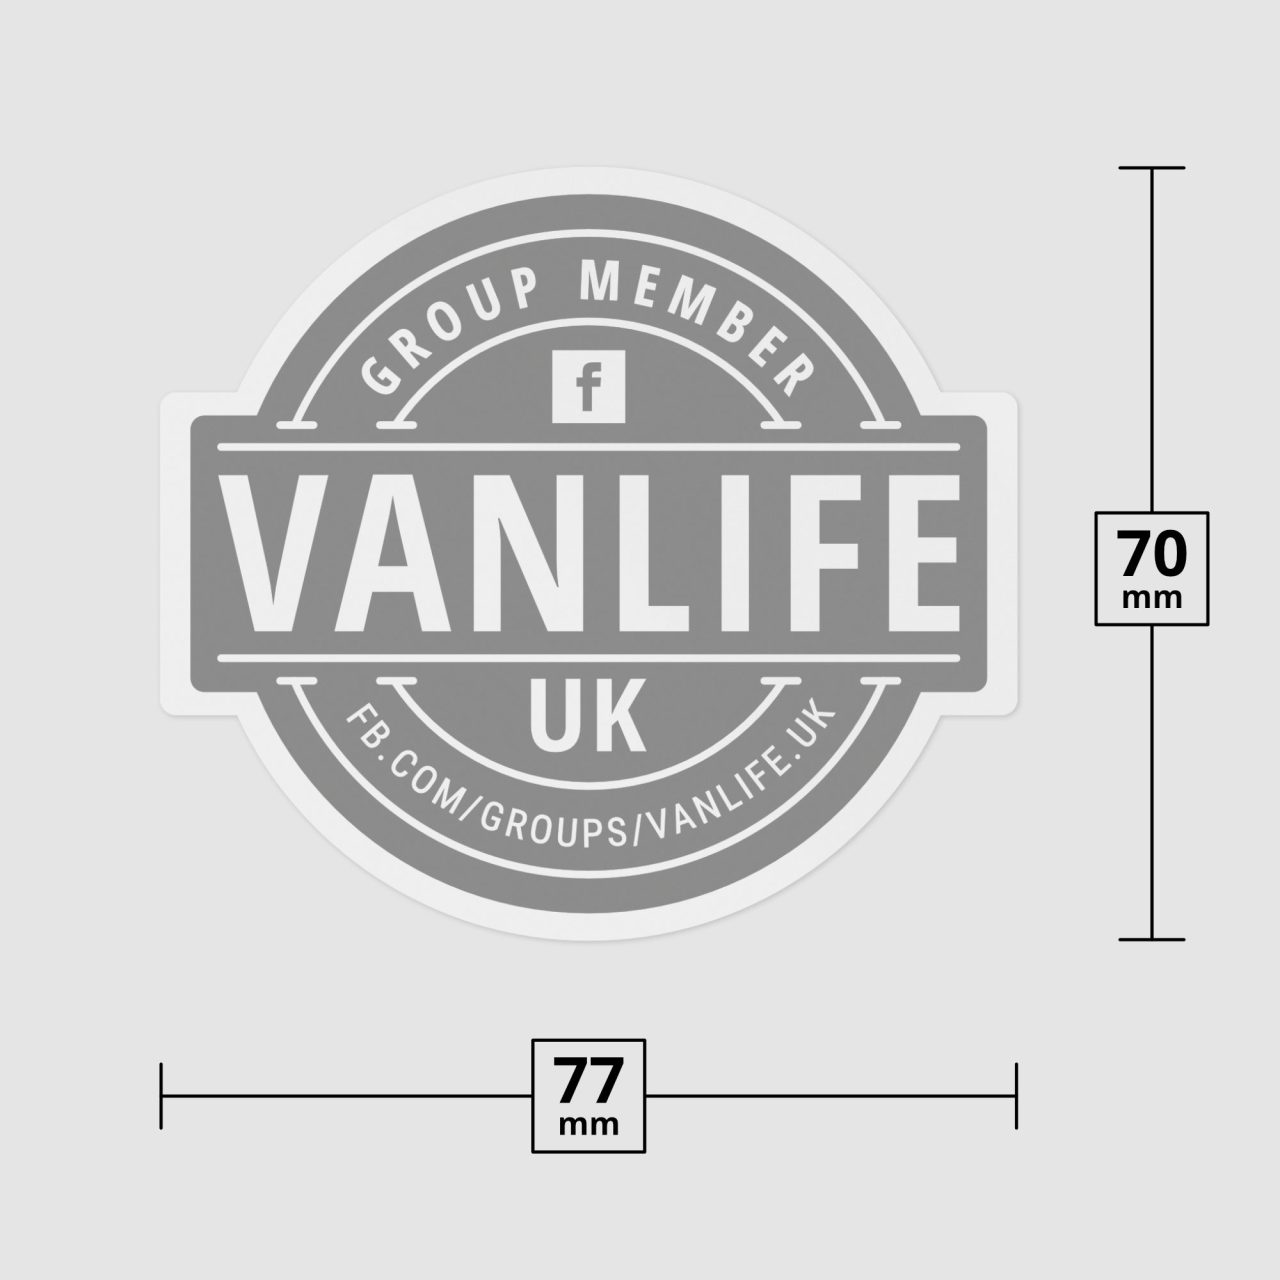 VanLife UK Sticker Campervan